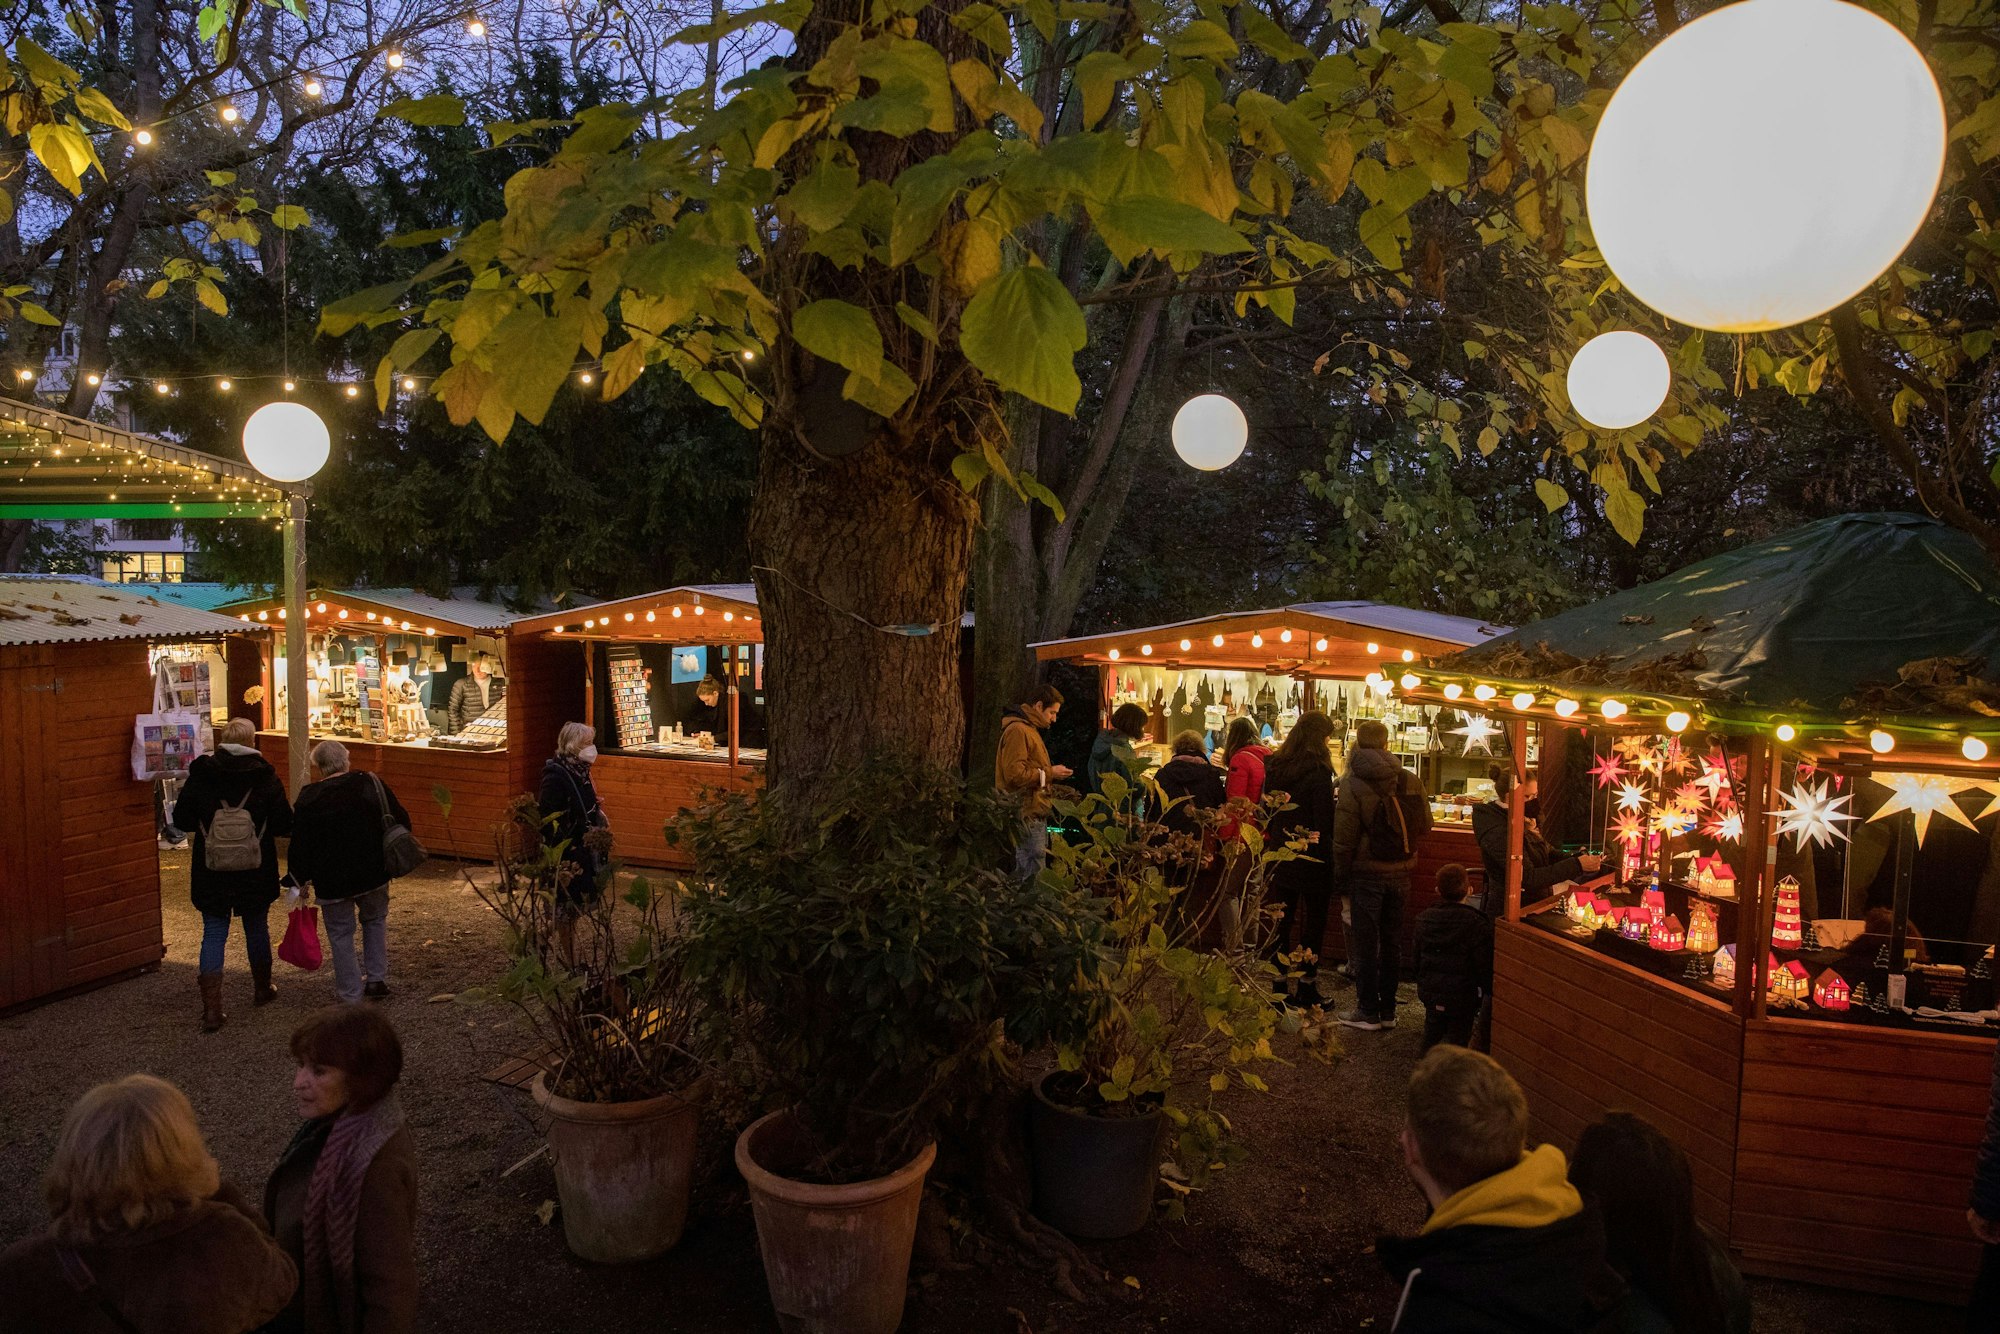 Weihnachtsmarkt im Stadtgarten: Holz-Buden mit Lichterketten im Halbkreis um einen Baum herum.